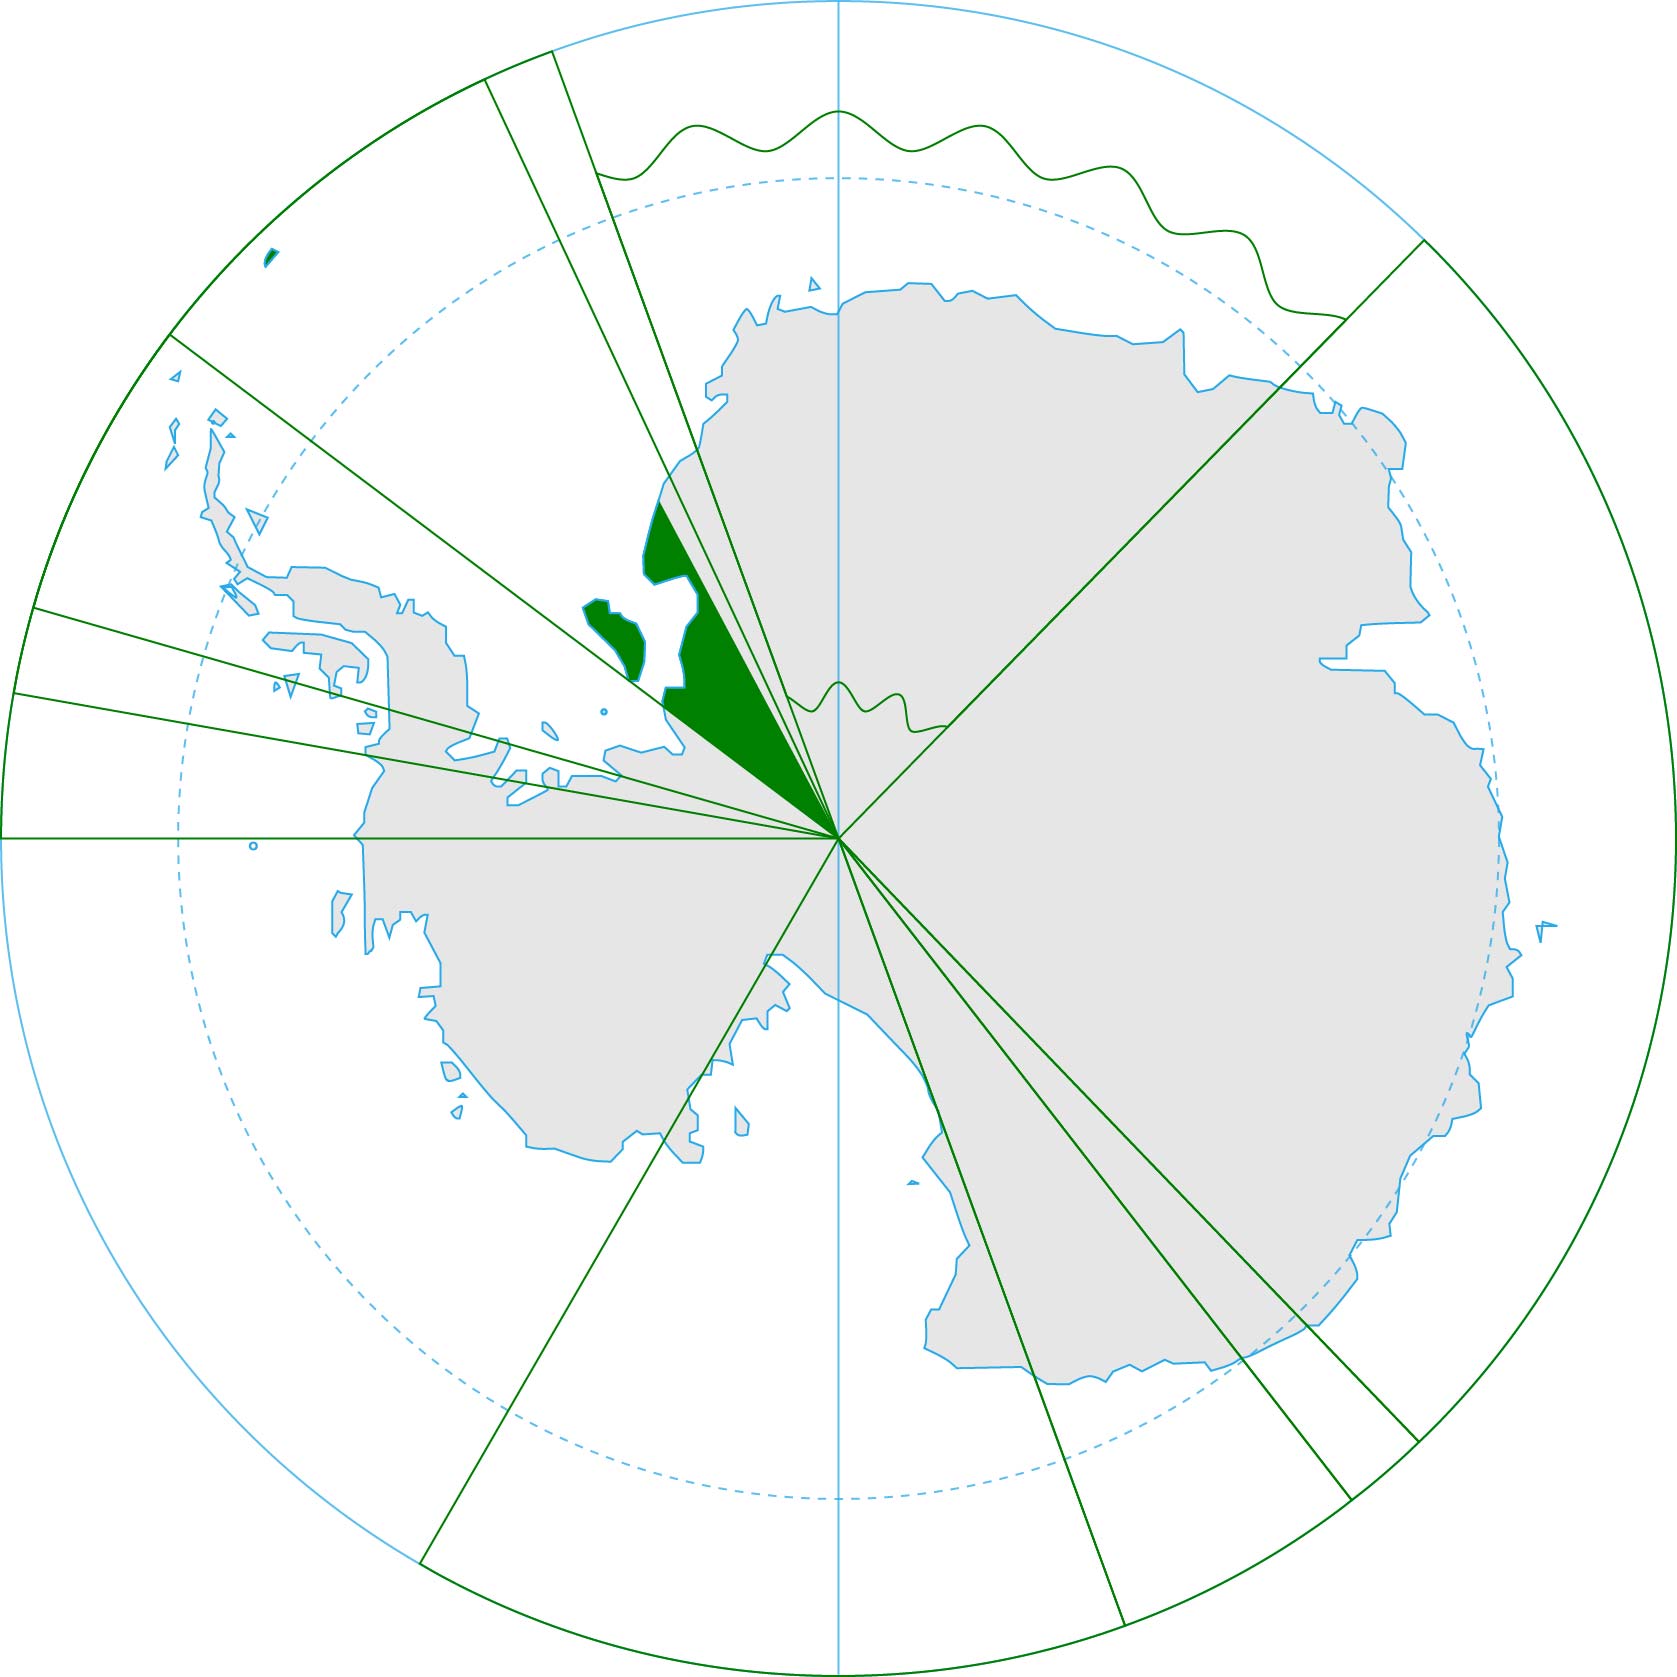 Brazil's Antarctic territorial claim